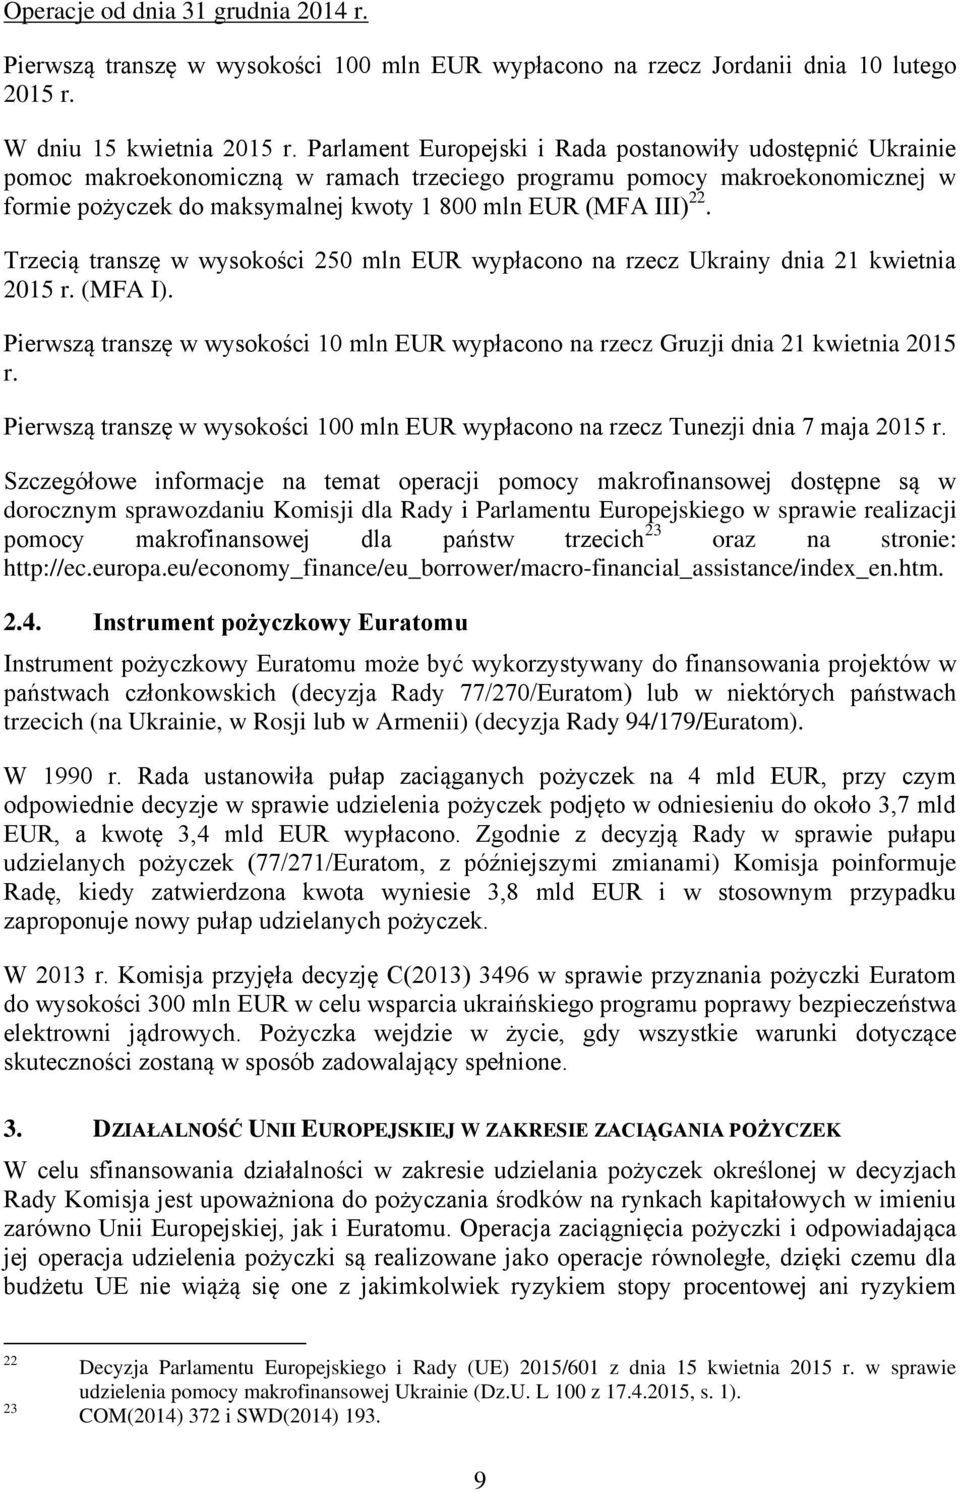 22. Trzecią transzę w wysokości 250 mln EUR wypłacono na rzecz Ukrainy dnia 21 kwietnia 2015 r. (MFA I). Pierwszą transzę w wysokości 10 mln EUR wypłacono na rzecz Gruzji dnia 21 kwietnia 2015 r.